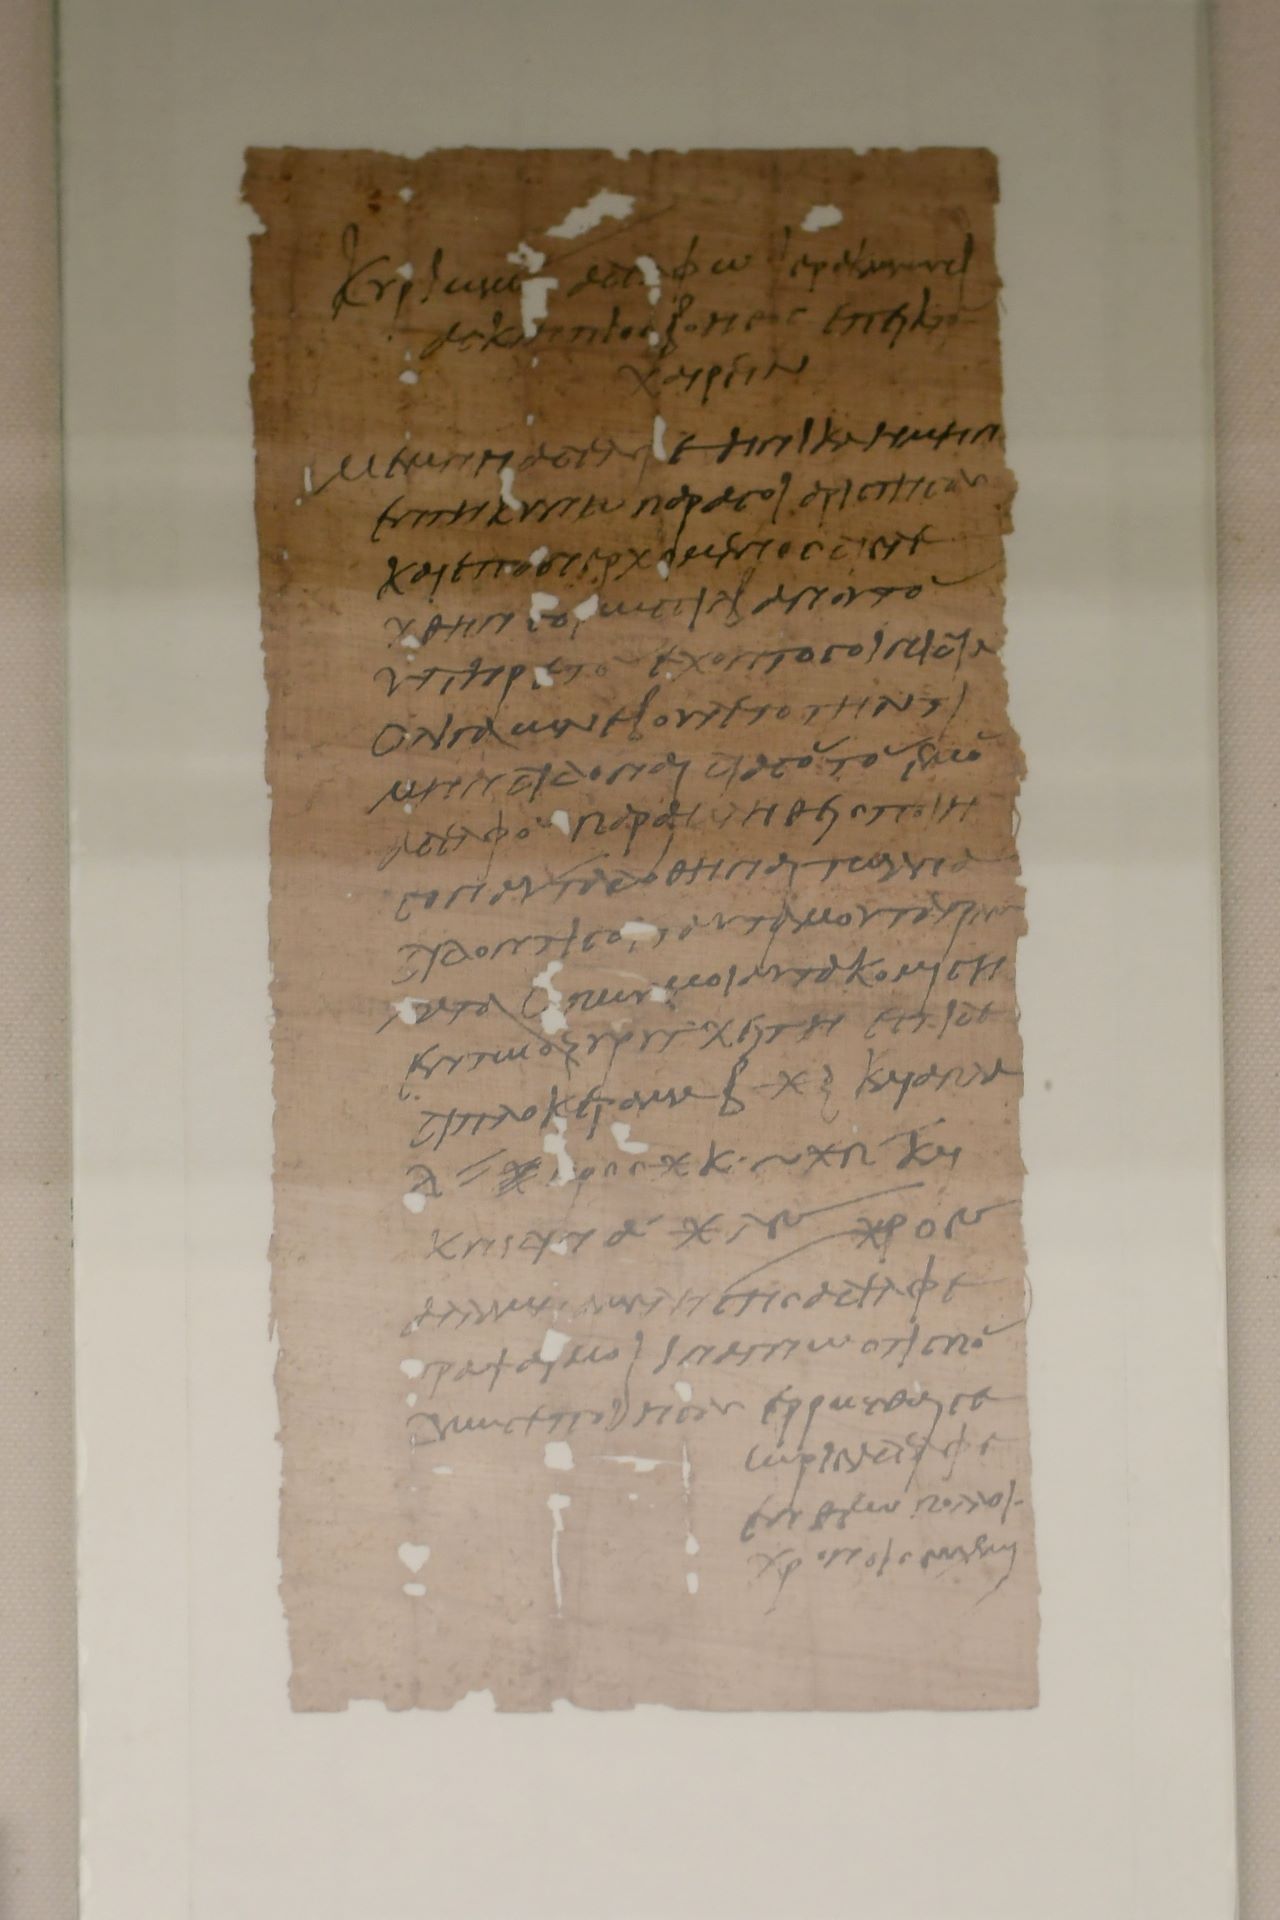 blog:2018-11-17-texte-aus-ferner-zeit:2018-11-17-wien-papyrusmuseum-122b.jpg